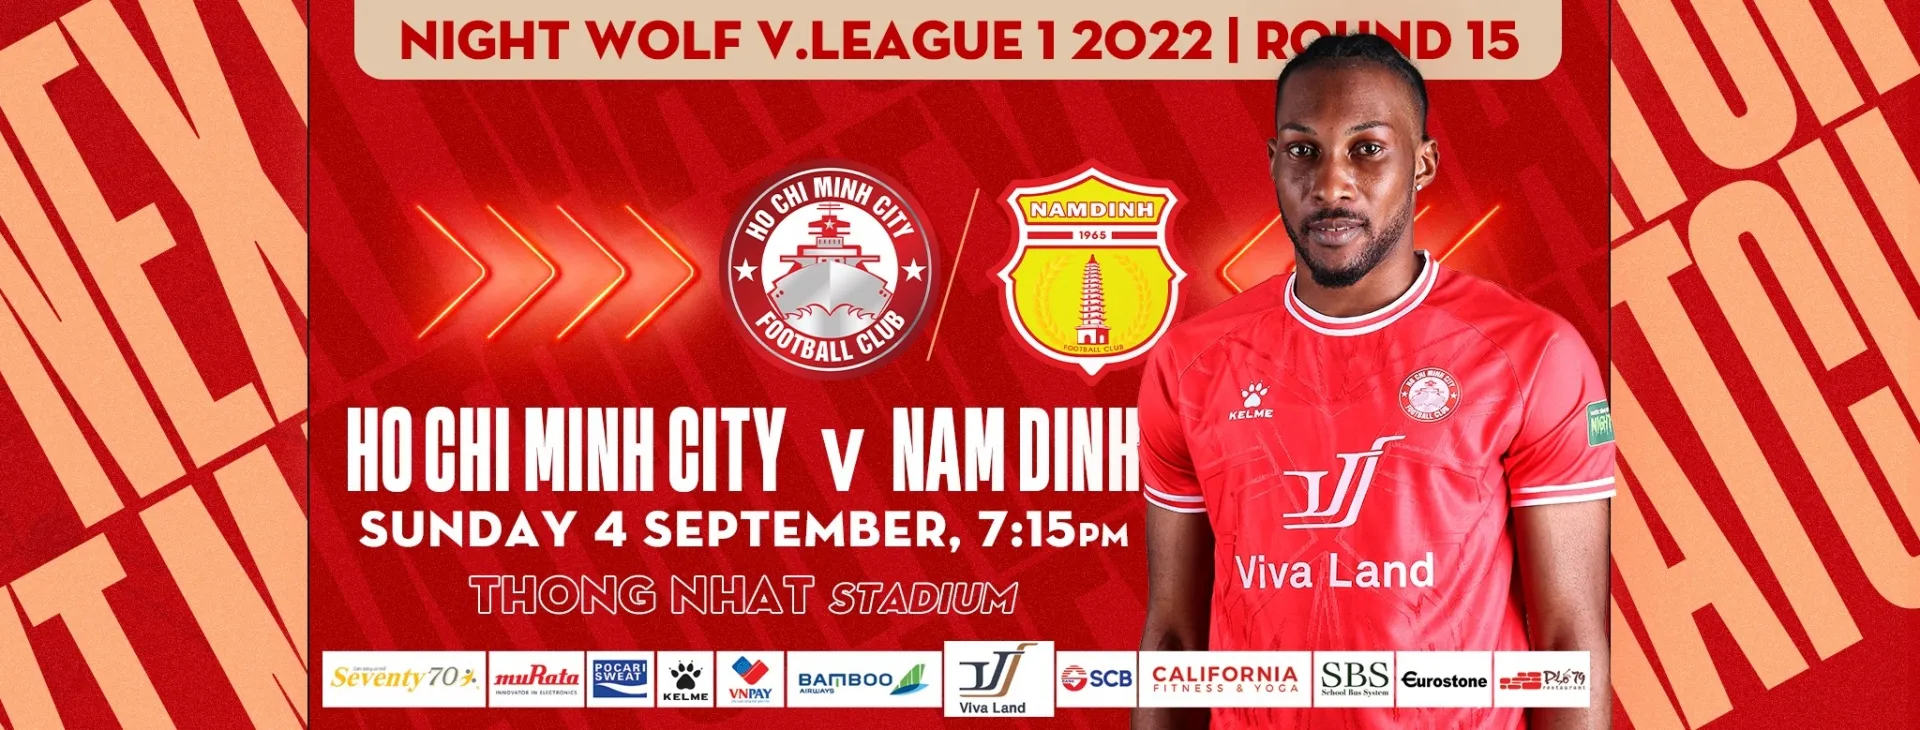 Nhận định TP.HCM vs Nam Định (19h15 04/09/2022) vòng 15 V-League: Trận cầu 6 điểm